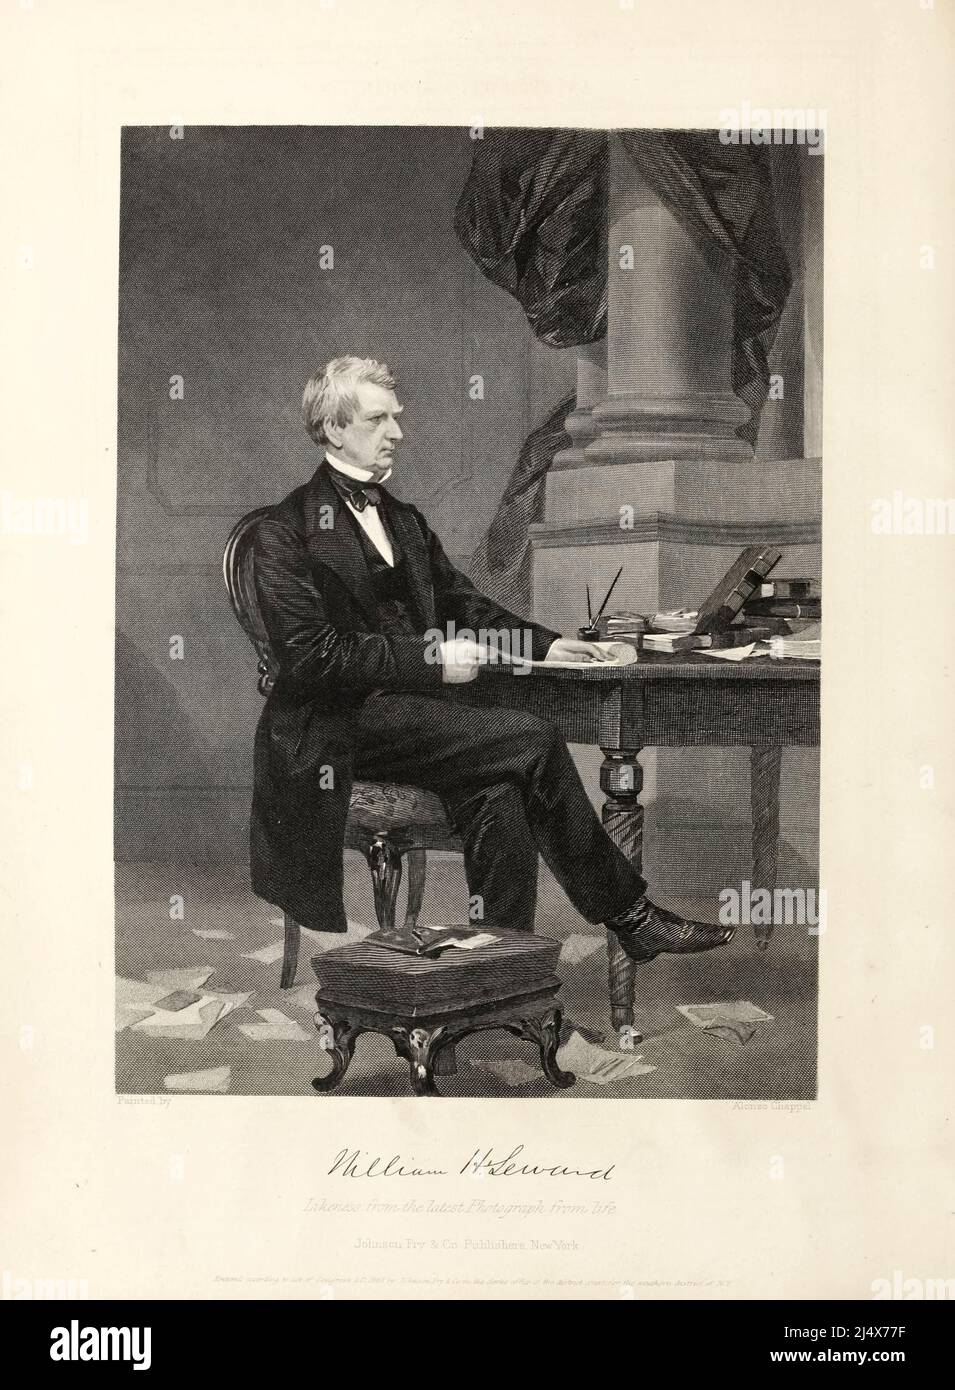 William Henry Seward (16 mai 1801 – 10 octobre 1872) était un homme politique américain qui a été secrétaire d'État des États-Unis de 1861 à 1869, et a été gouverneur de New York et sénateur des États-Unis. Opposant résolu à la propagation de l'esclavage dans les années qui ont précédé la guerre de Sécession, il était une figure éminente du Parti républicain dans ses années formatrices, Et a été loué pour son travail au nom de l'Union en tant que secrétaire d'État pendant la guerre civile. Du livre Histoire de la guerre pour l'Union : civile, militaire et navale. Fondé sur officiel et autre aut Banque D'Images